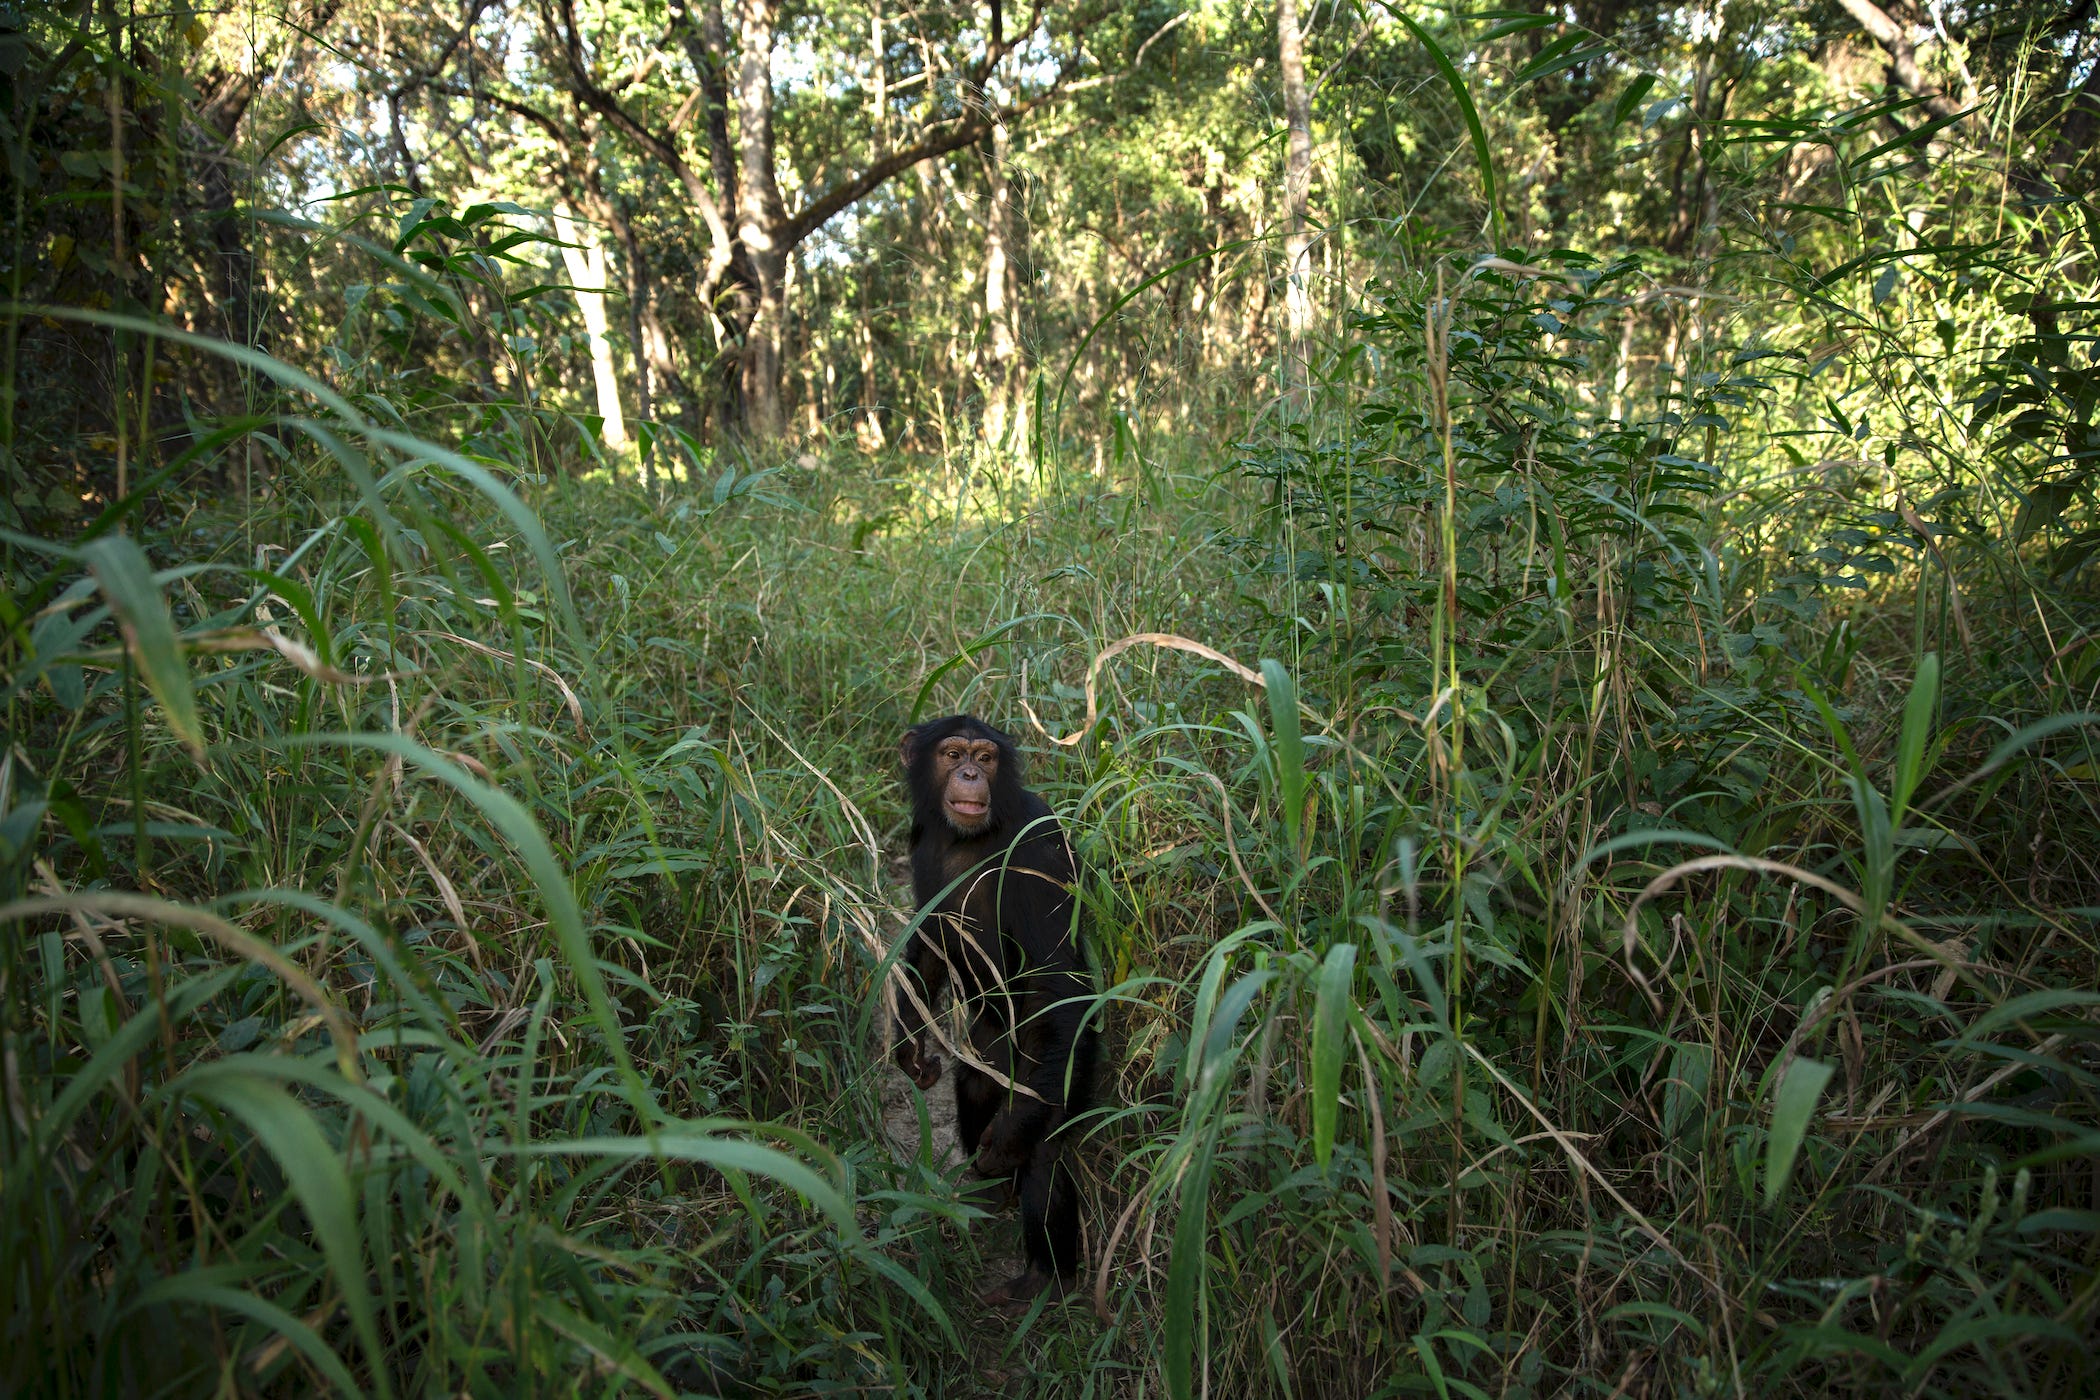 Die 6-jährige Schimpansin Tya schaut während eines Buschspaziergangs im Chimpanzee Conservation Centre (CCC) am 30. November 2015 in Somoria, Guinea, aus dem Gras